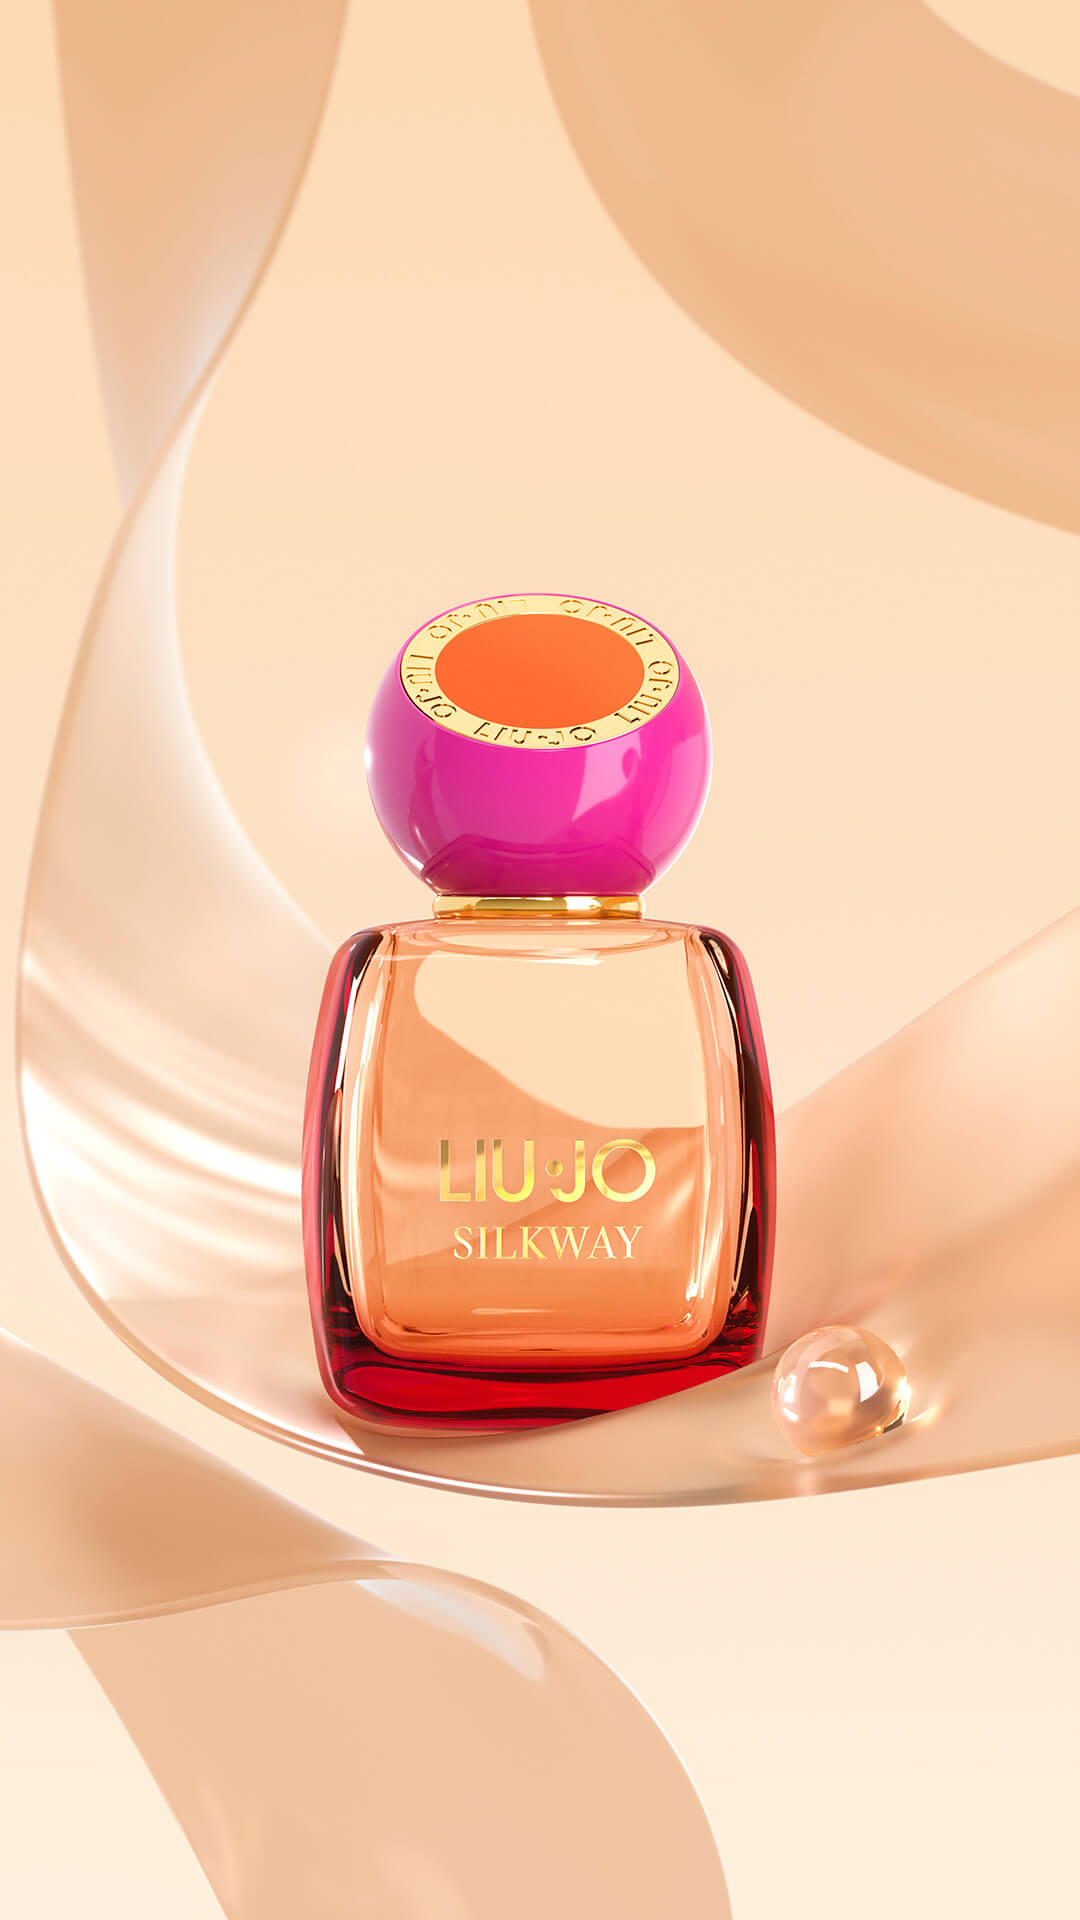 liujo-silkway-the-new-launch-liu-jo-beauty-desire-fragrances-3